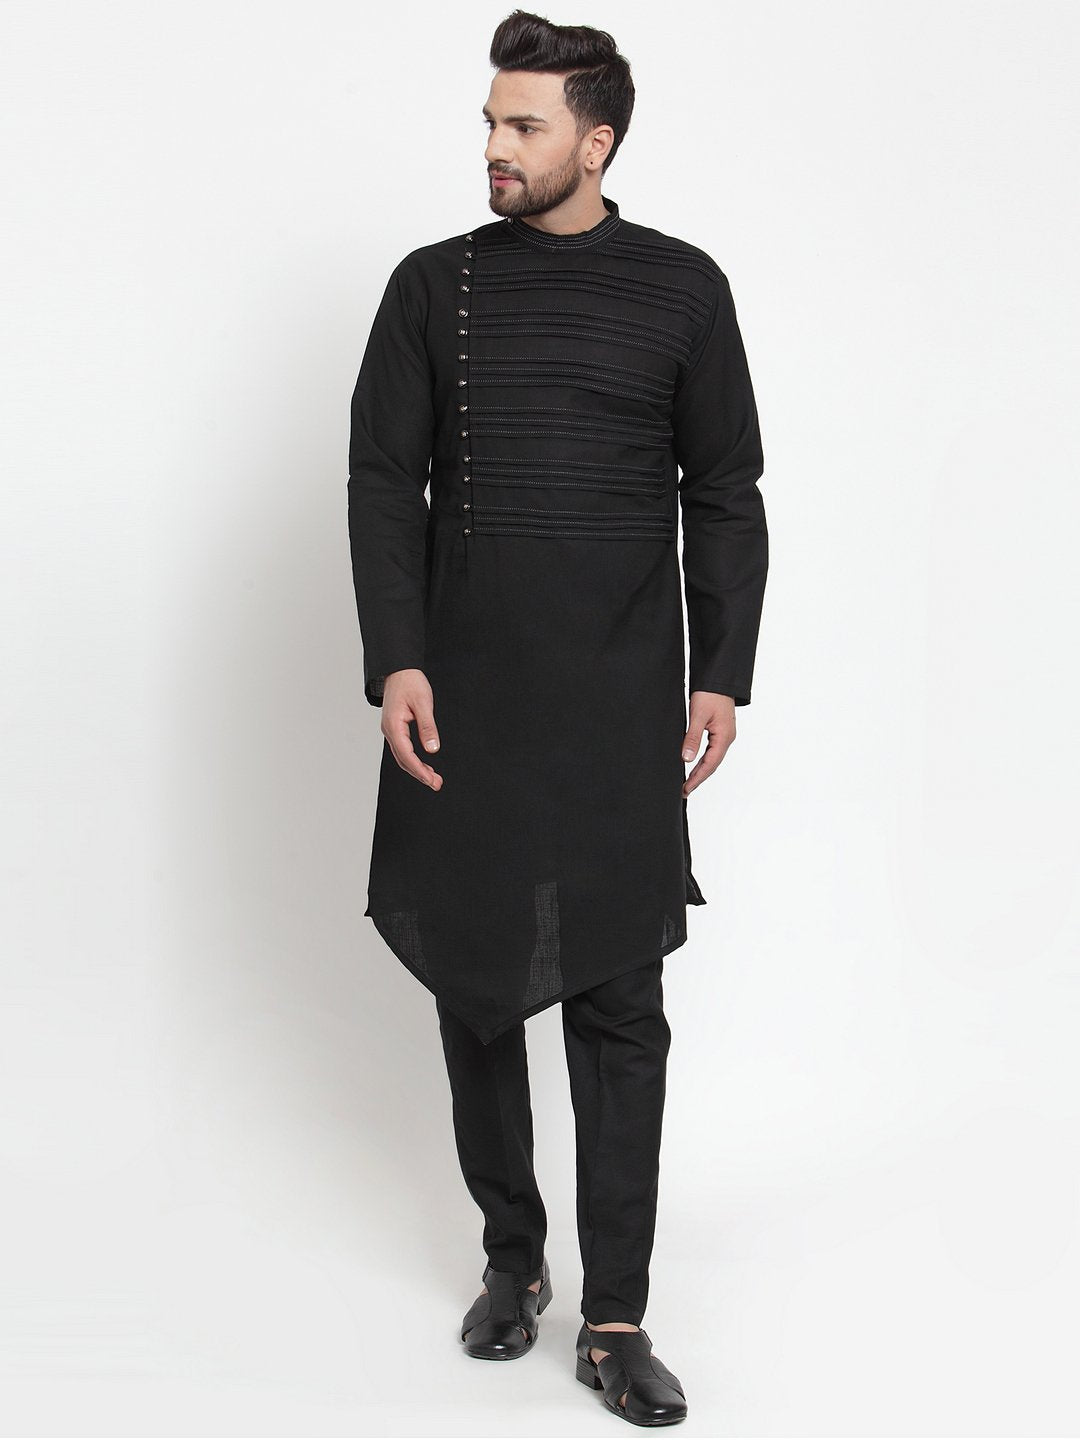 Designer Black Kurta With Aligarh Pajama Set in Linen For Men by Treemoda